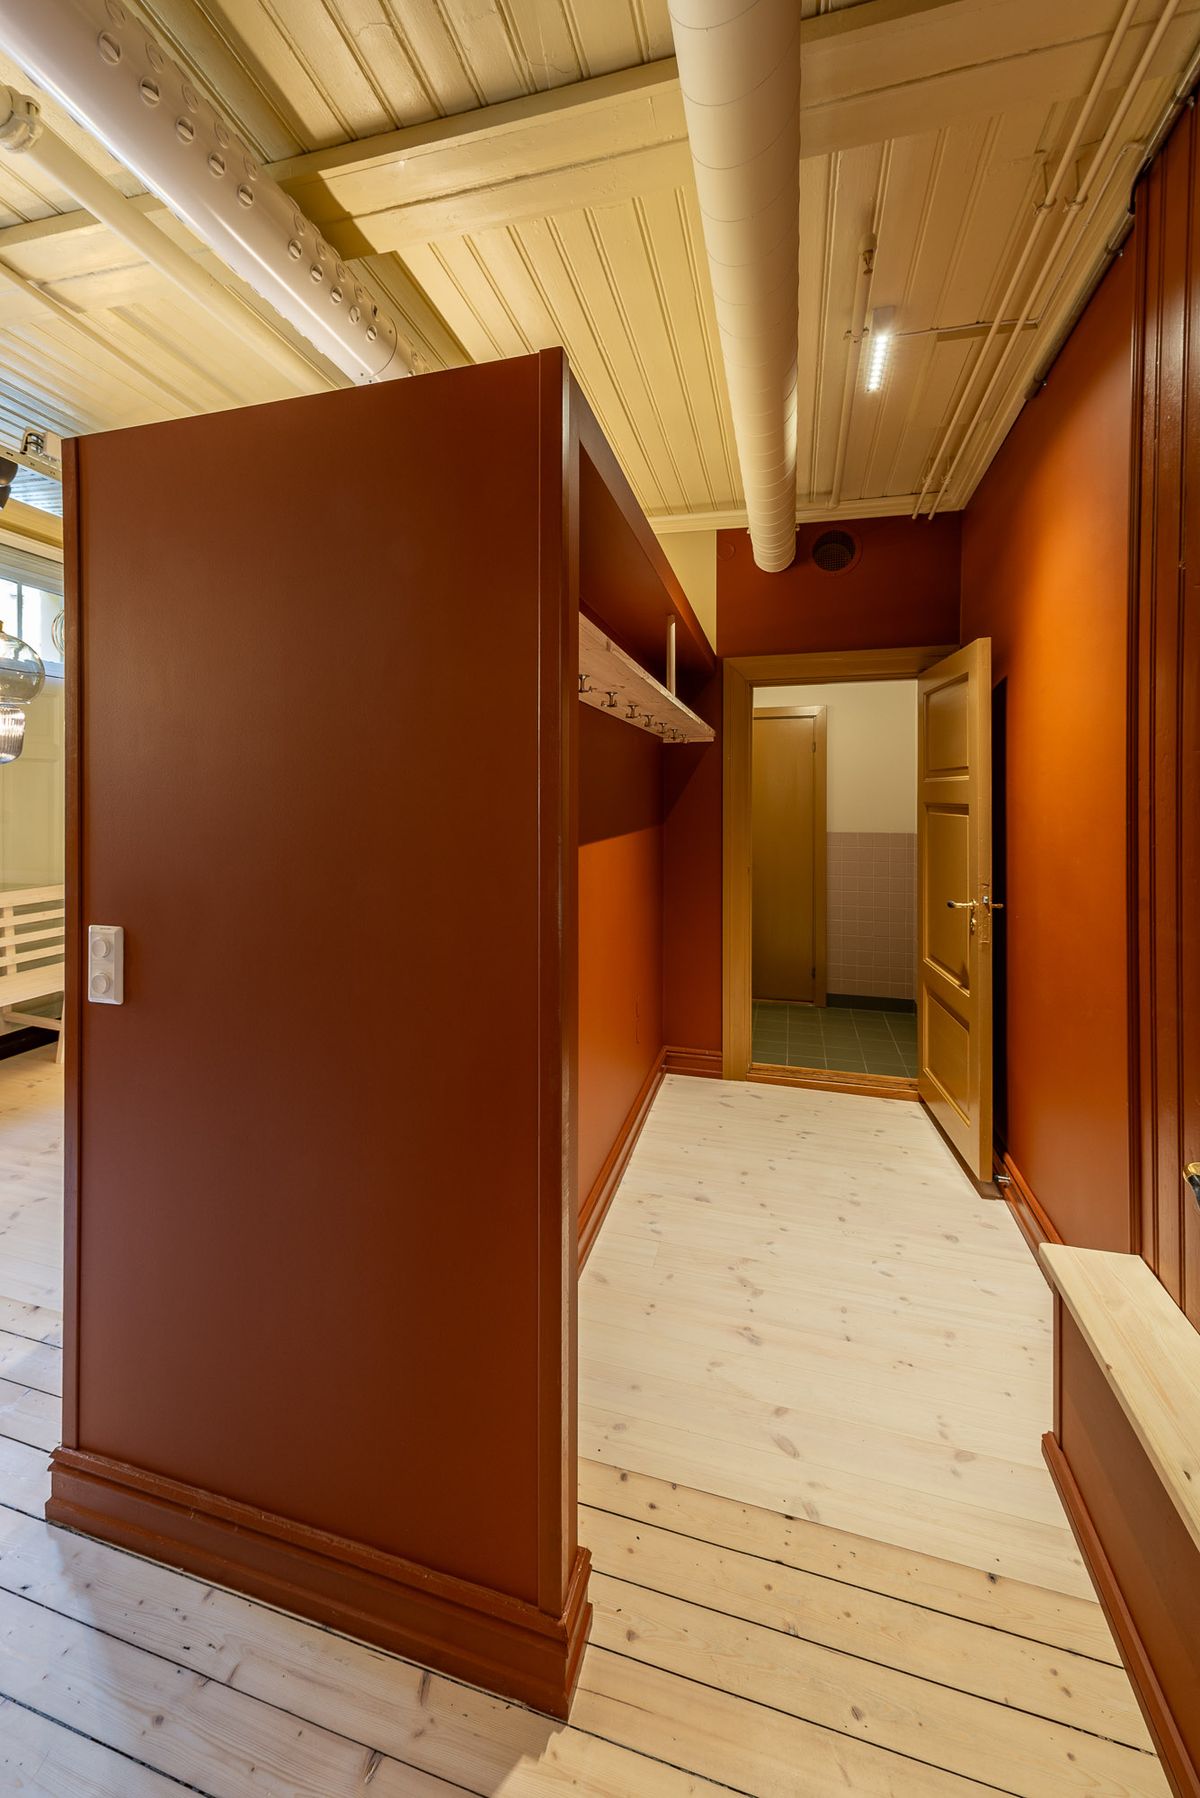 Fotografi av ny kjøkkeninnredning og korridor mot nye toaletter. Rød korridor. 